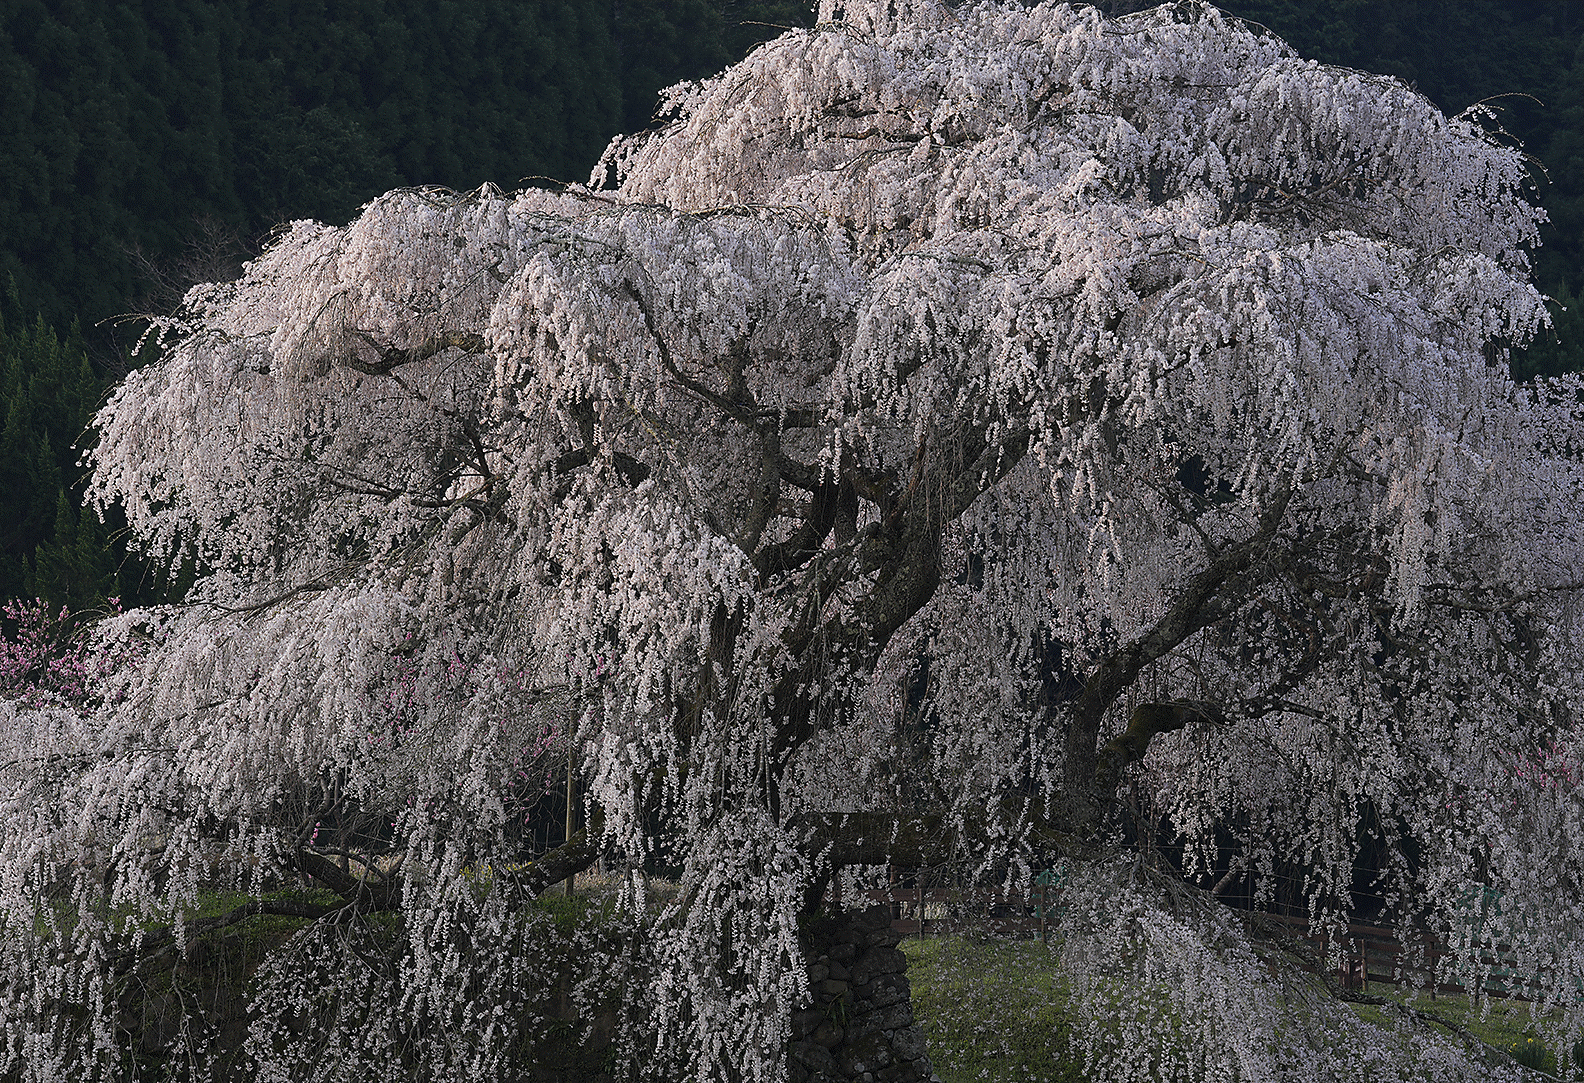 Image de fleurs de cerisier à leur apogée